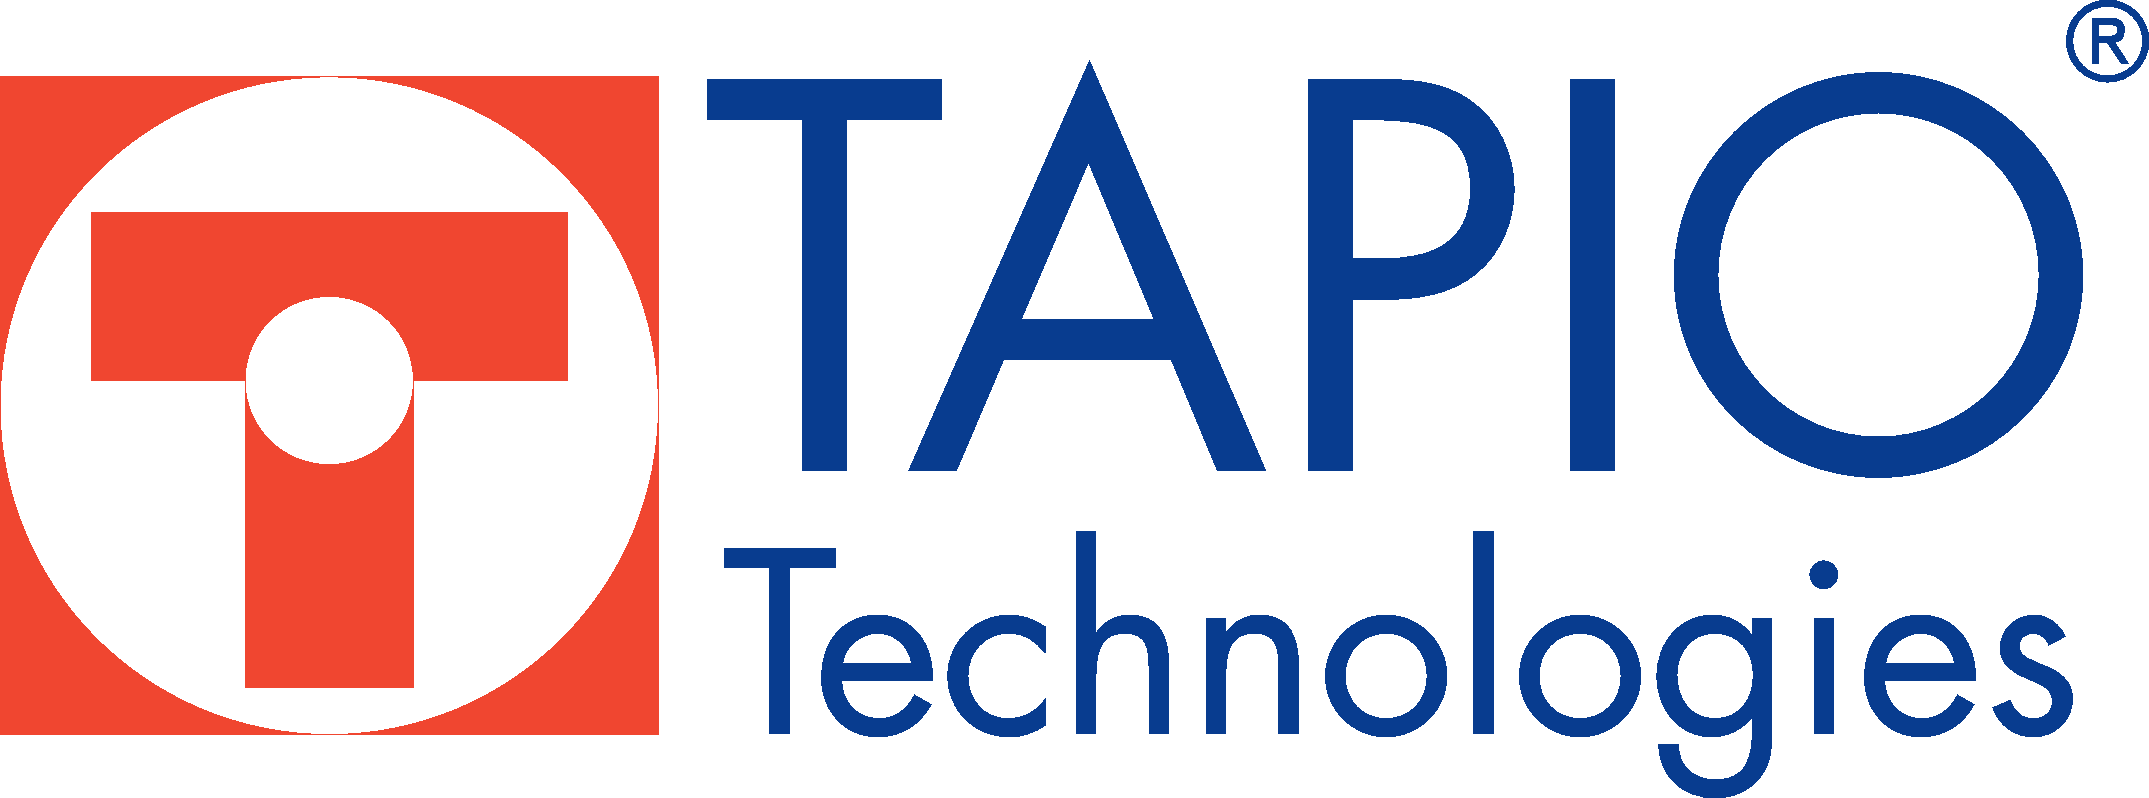 Tapio Technologies Oy